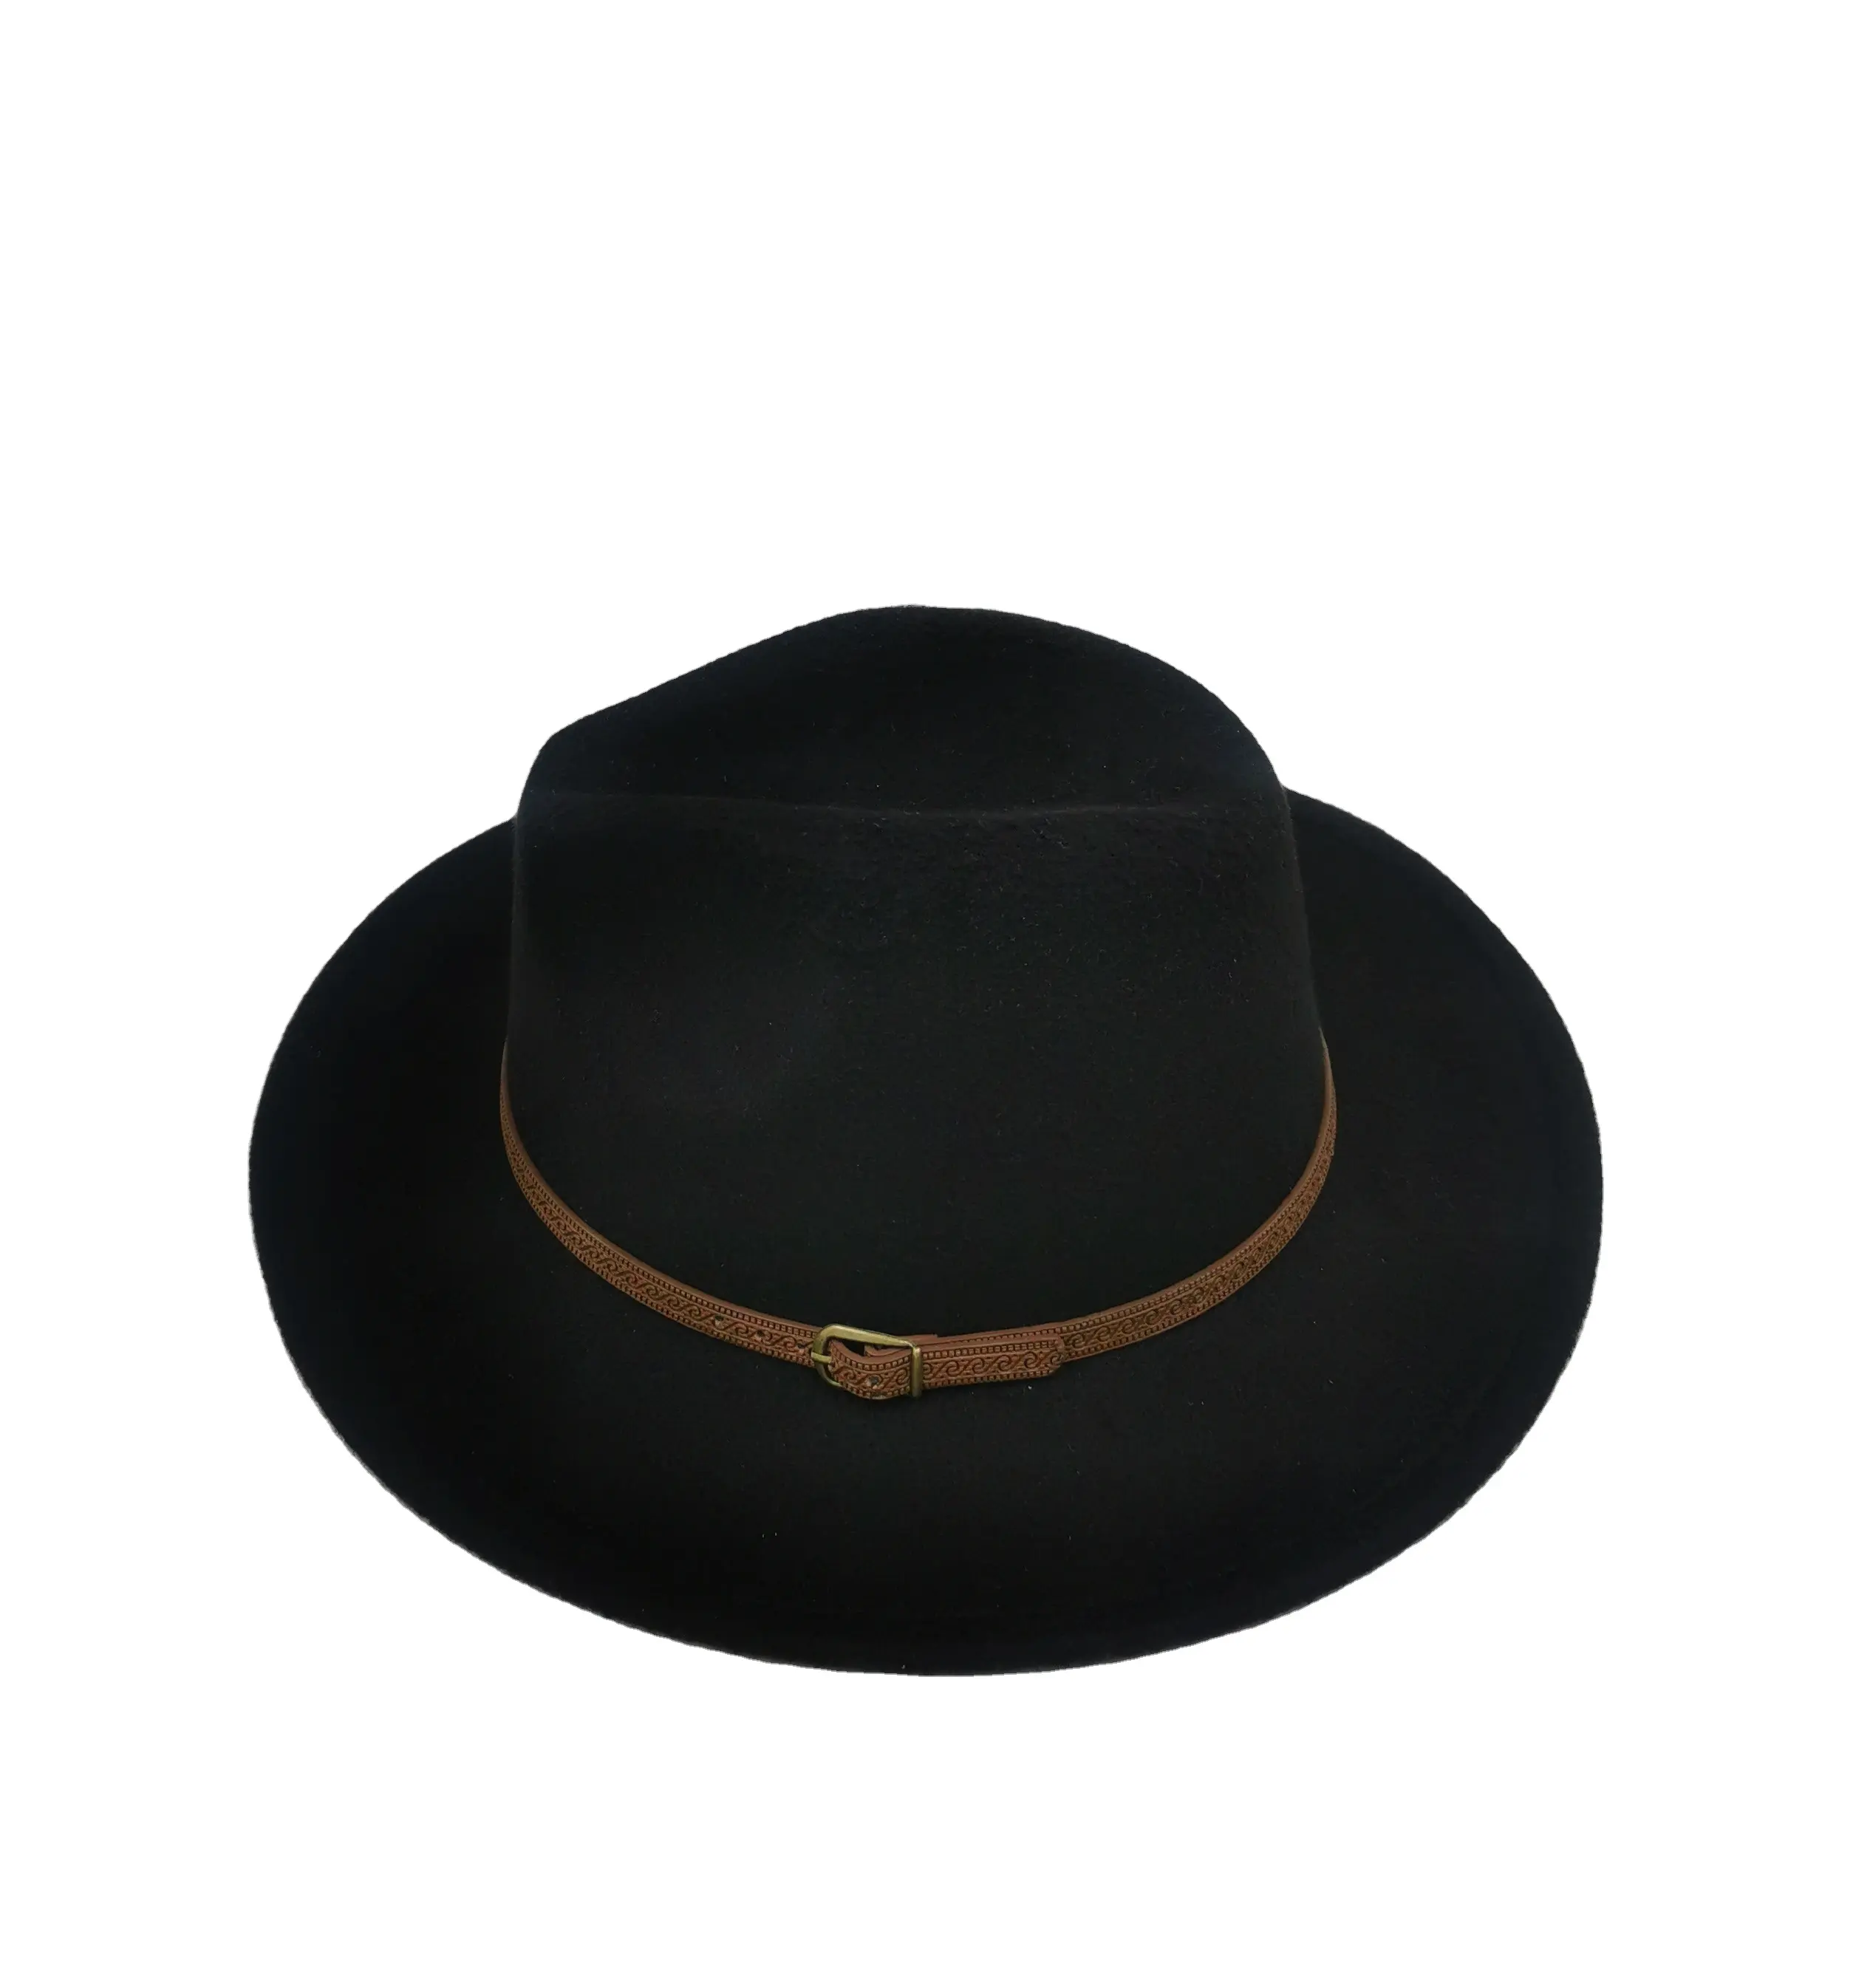 Головной убор для взрослых, для путешествий, удобные модные мужские и женские фетровые шляпы 2022, шляпы федоры